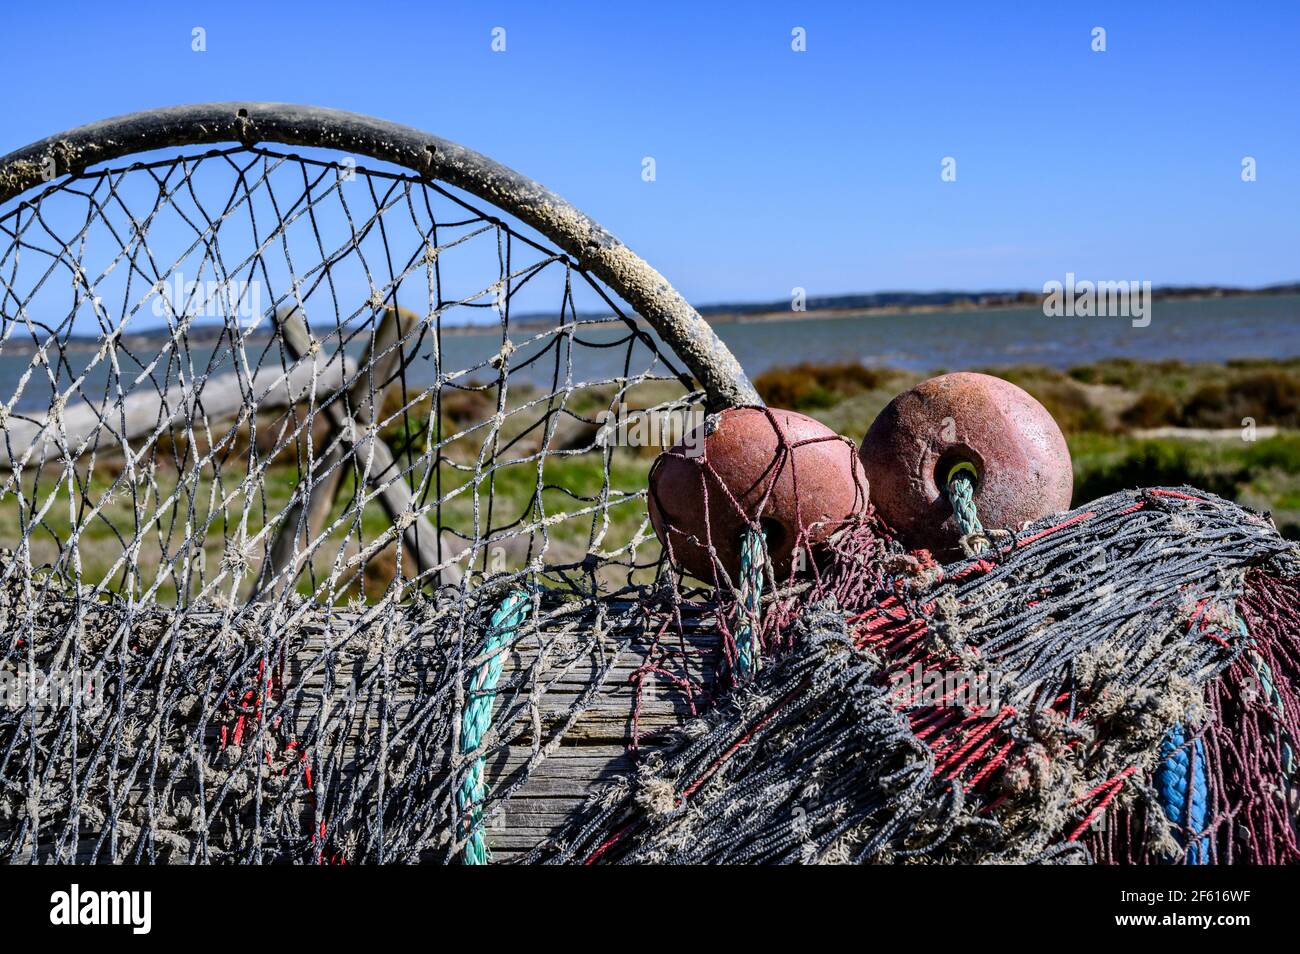 Eel fishing gear and nets drying in the sun at Bages, Parc naturel régional de la Narbonnaise en Méditerranée, Aude, France Stock Photo